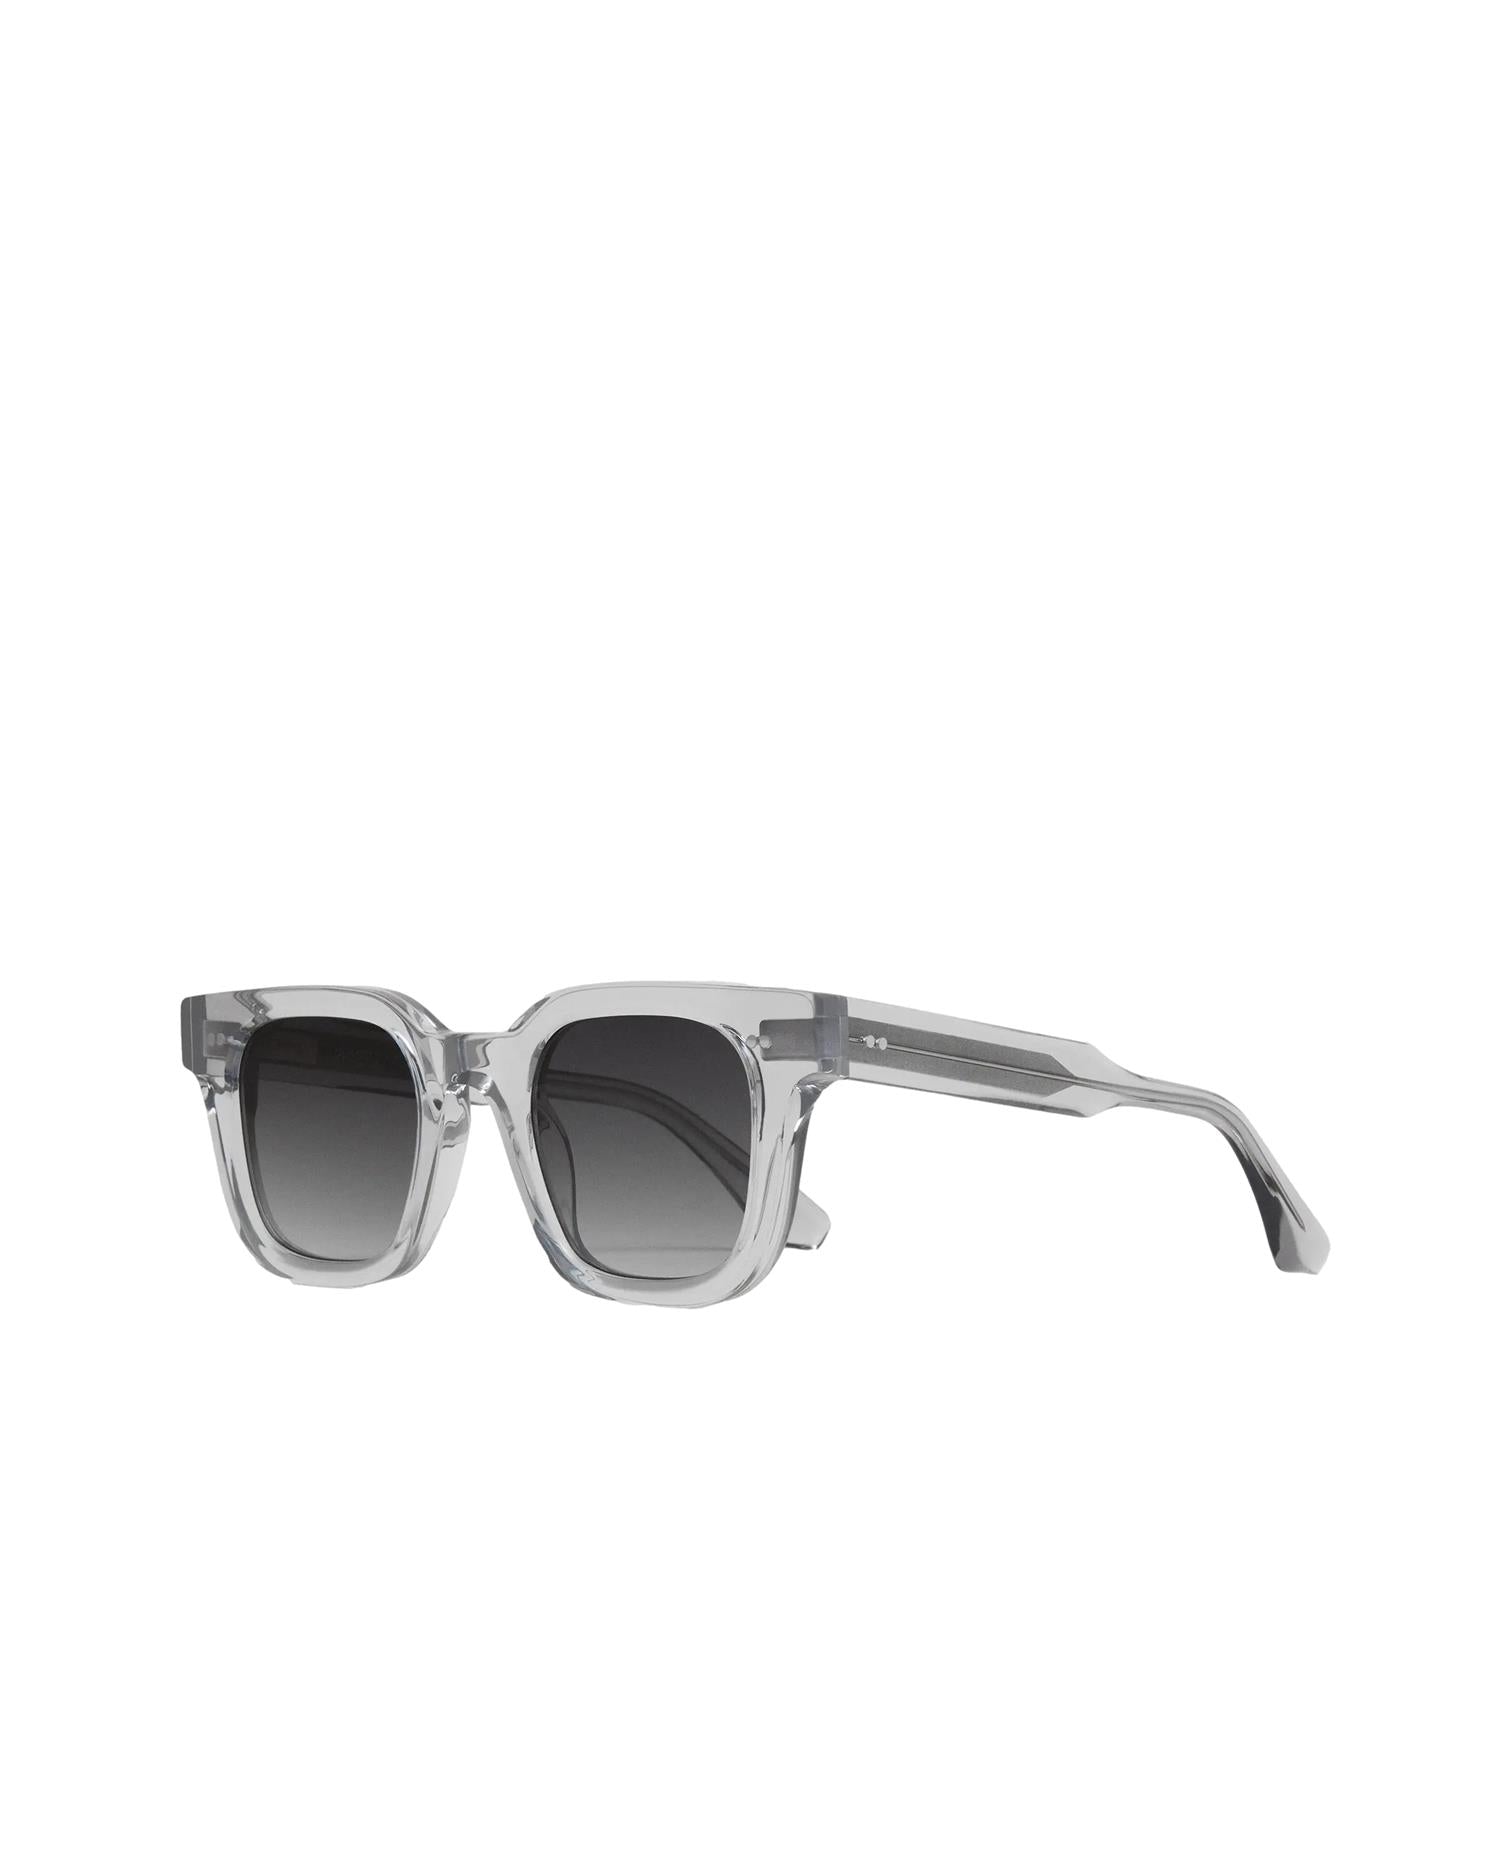 Chimi Eyewear 04 Grey Solbriller Grå - modostore.no